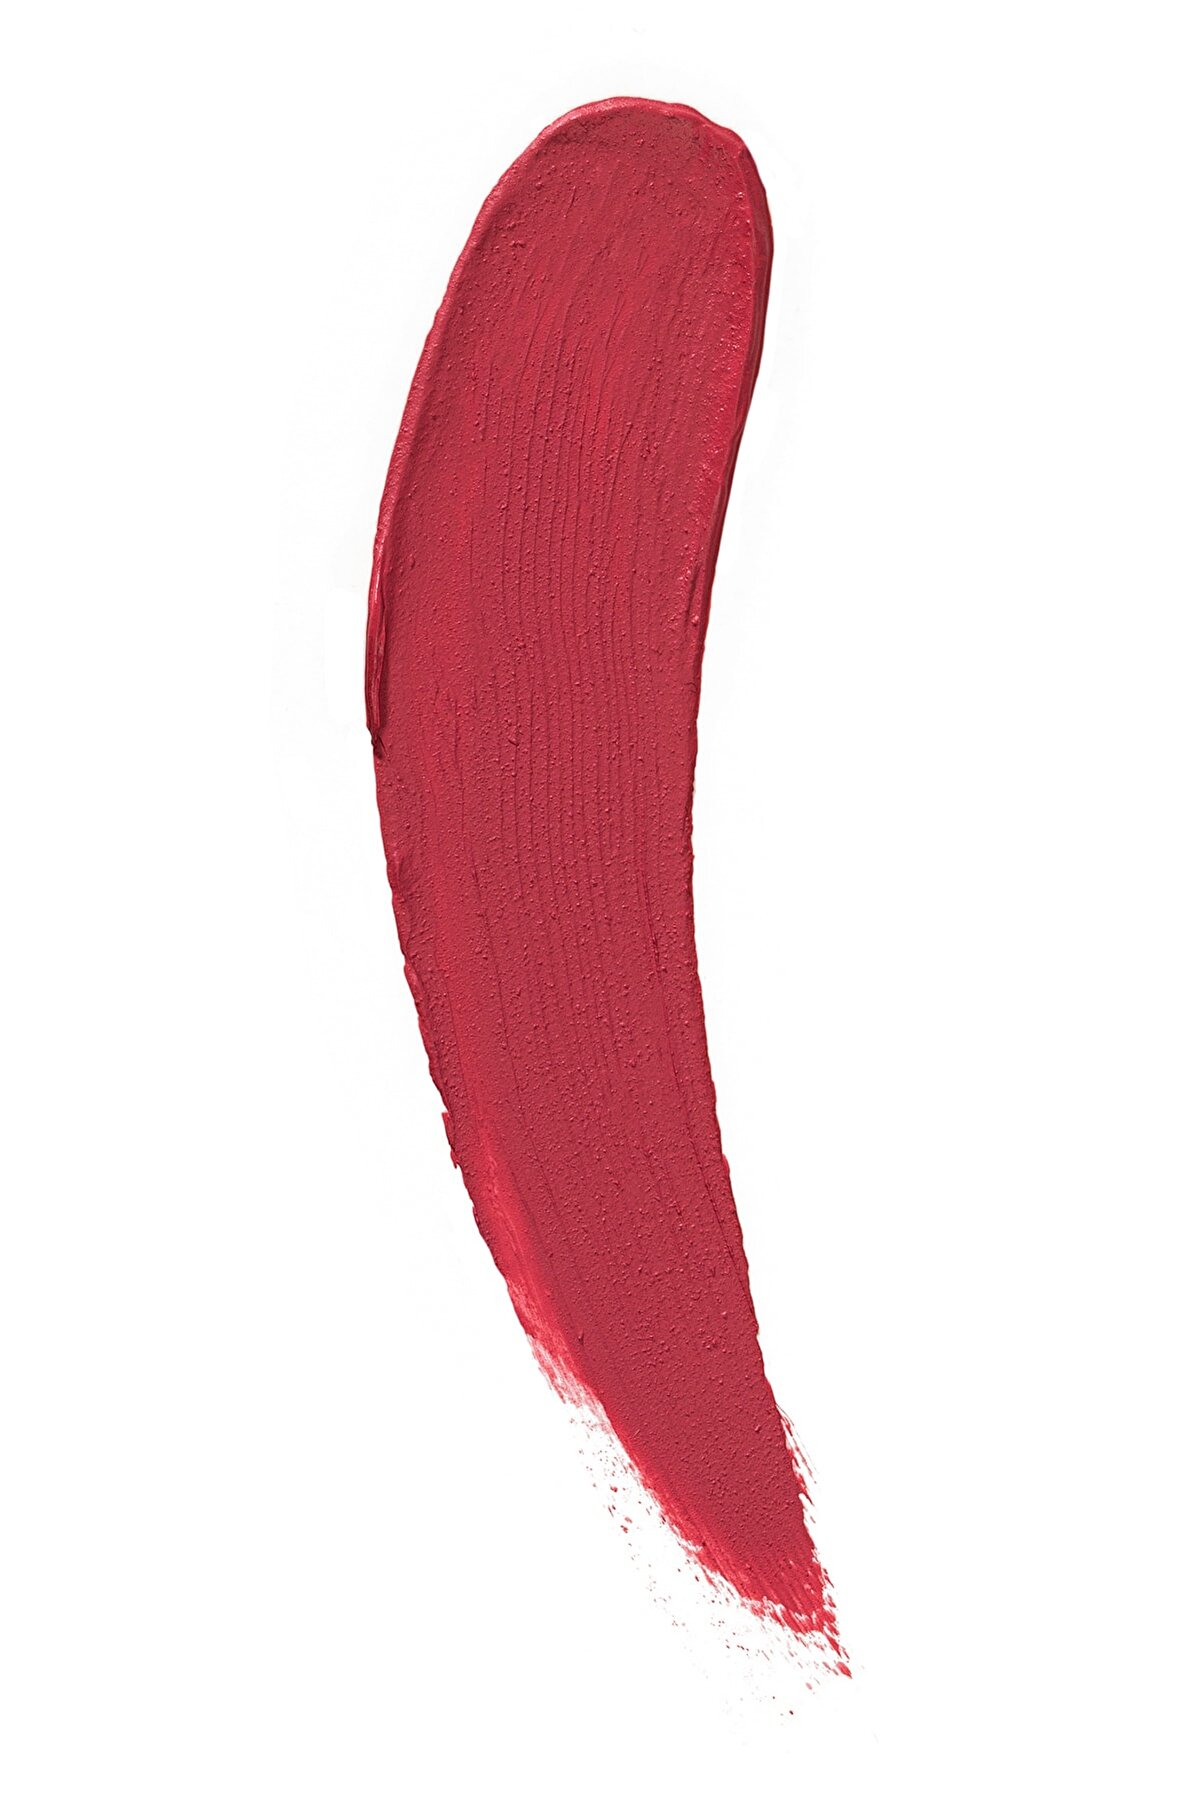 رژ لب مایع مات ابریشمی مدل Silk Matte رنگ صورتی Daisy شماره ۴ فلورمار Flormar شیکولات